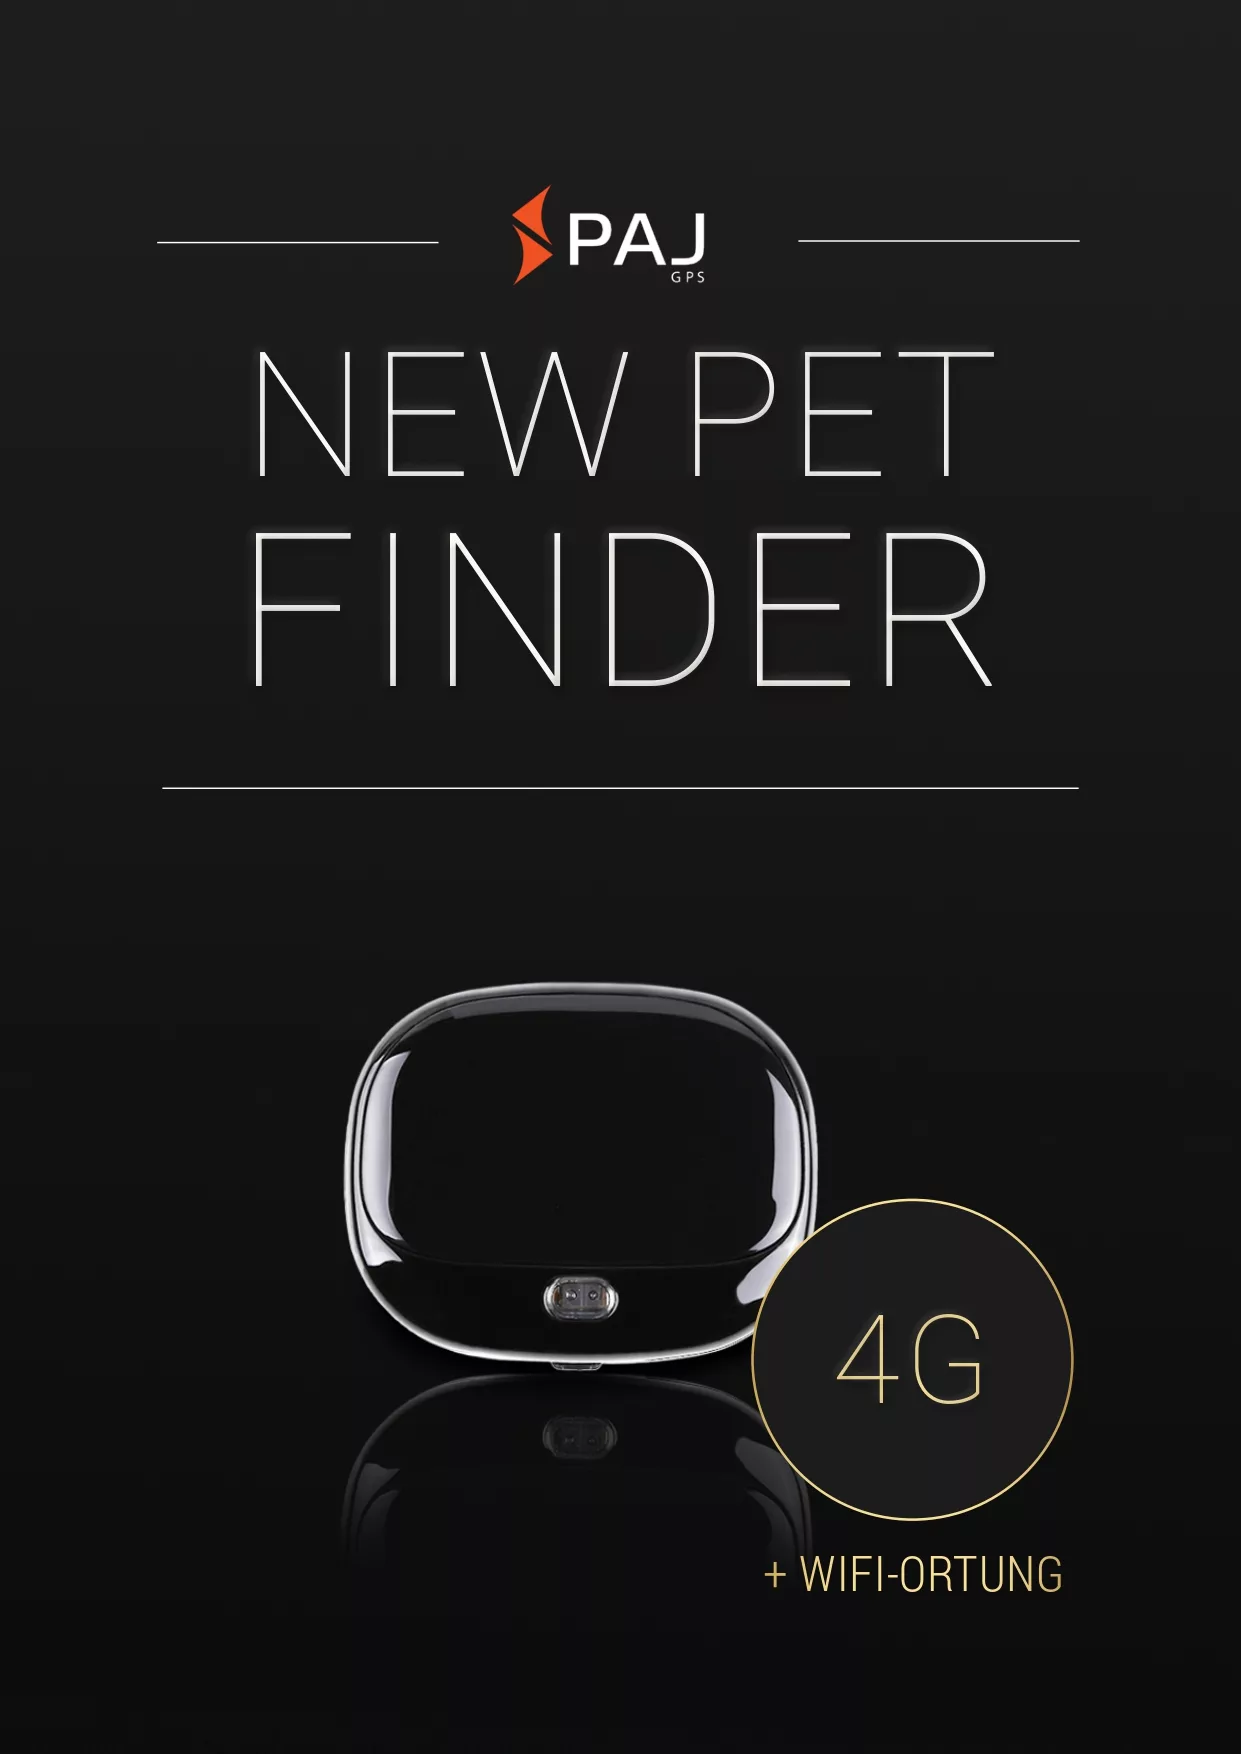 Immagine di copertina per instruzione d'uso PET Finder 4G